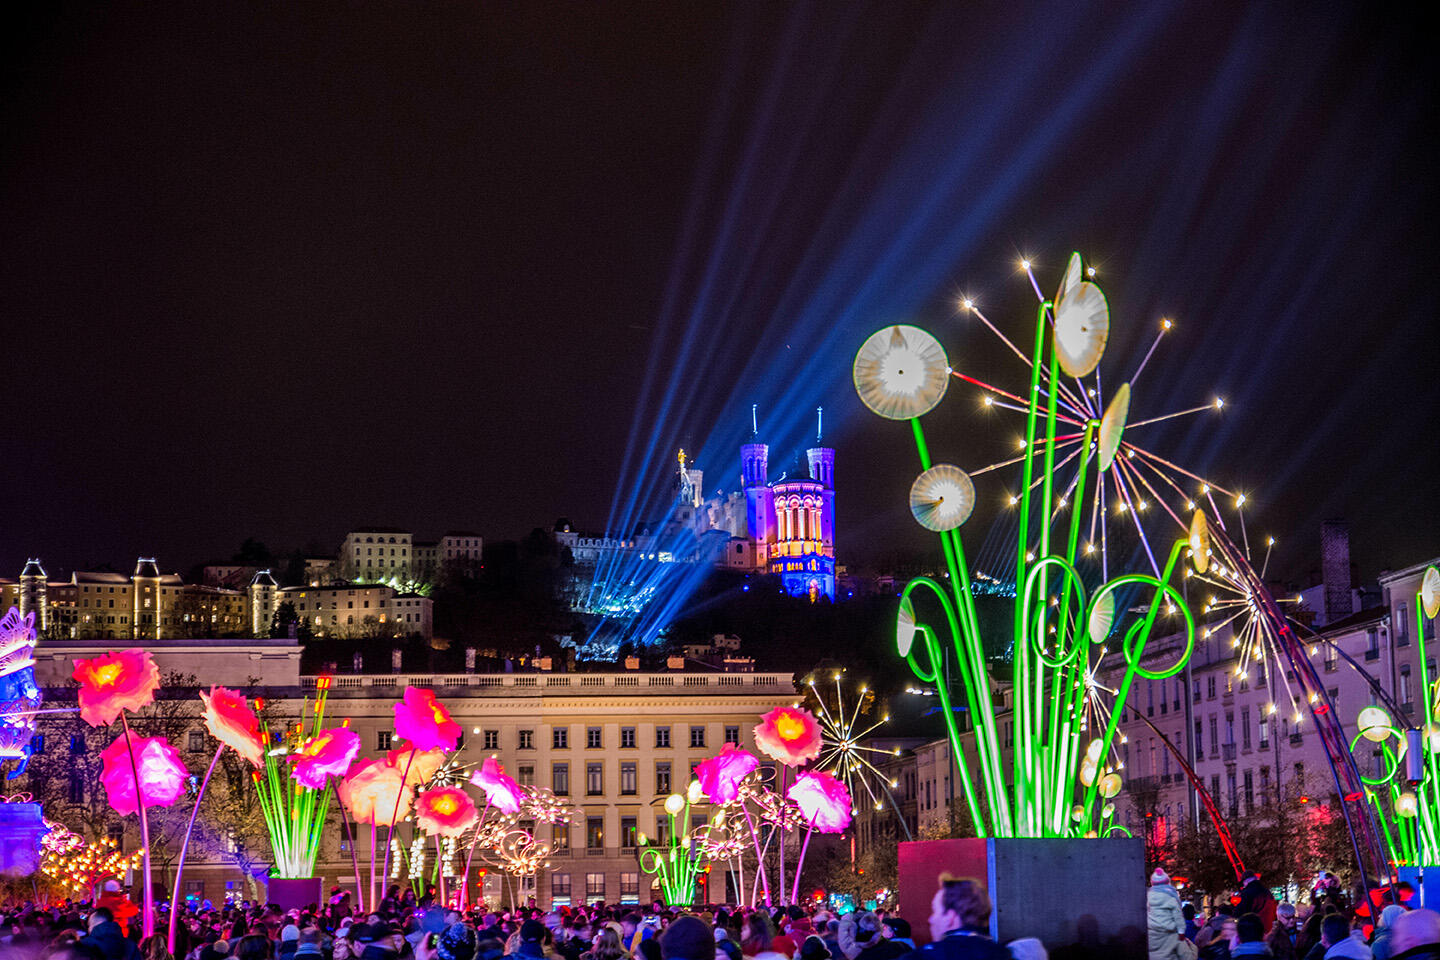 Vista del Festival de Luces en Lyon con la basílica iluminada e instalaciones florales coloridas, alojamiento en Appart’City.